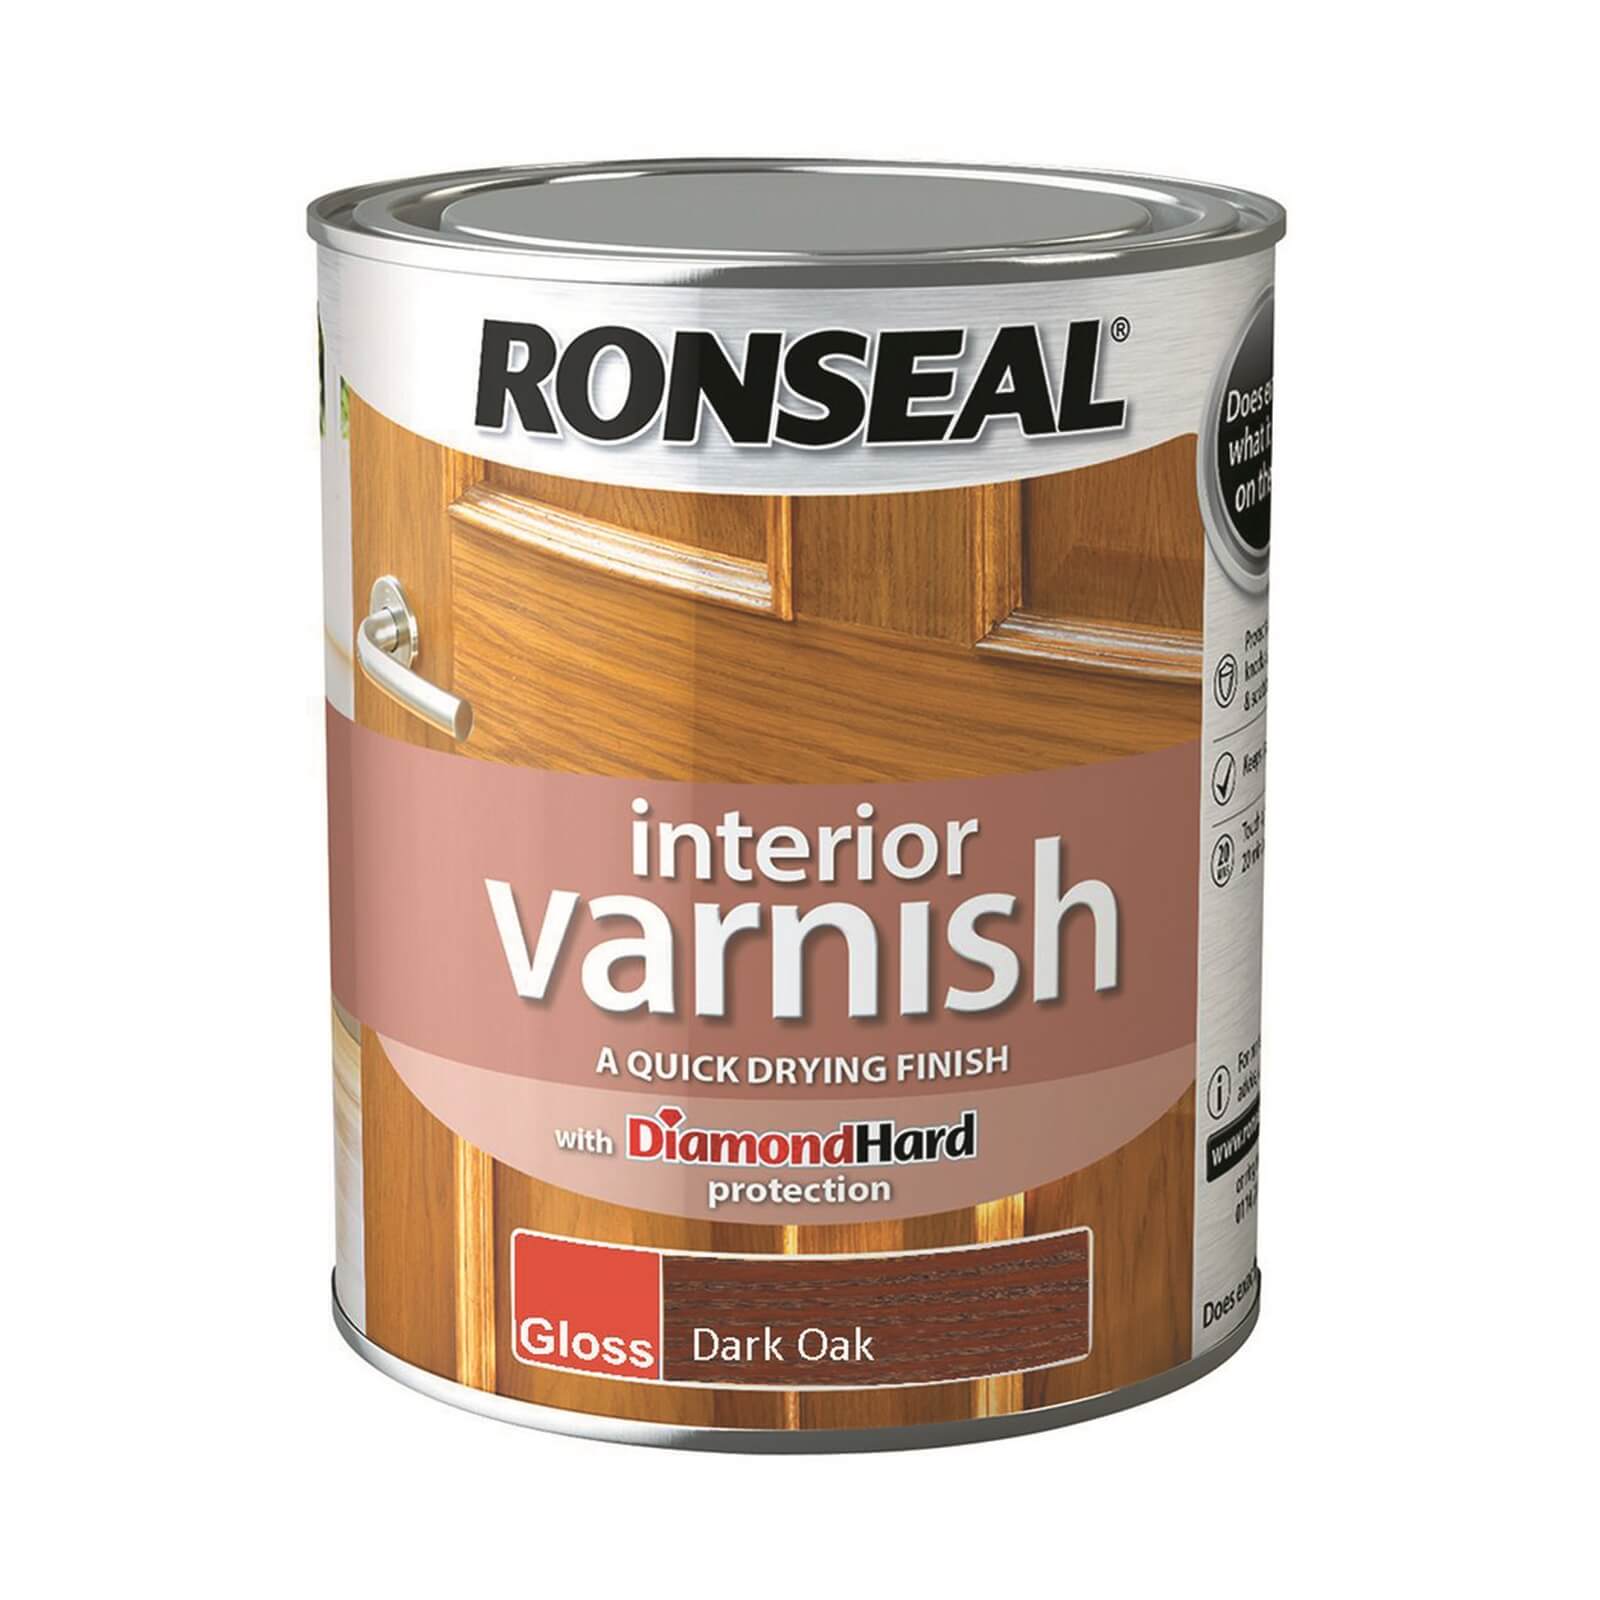 Ronseal Interior Varnish Gloss Dark Oak - 750ml